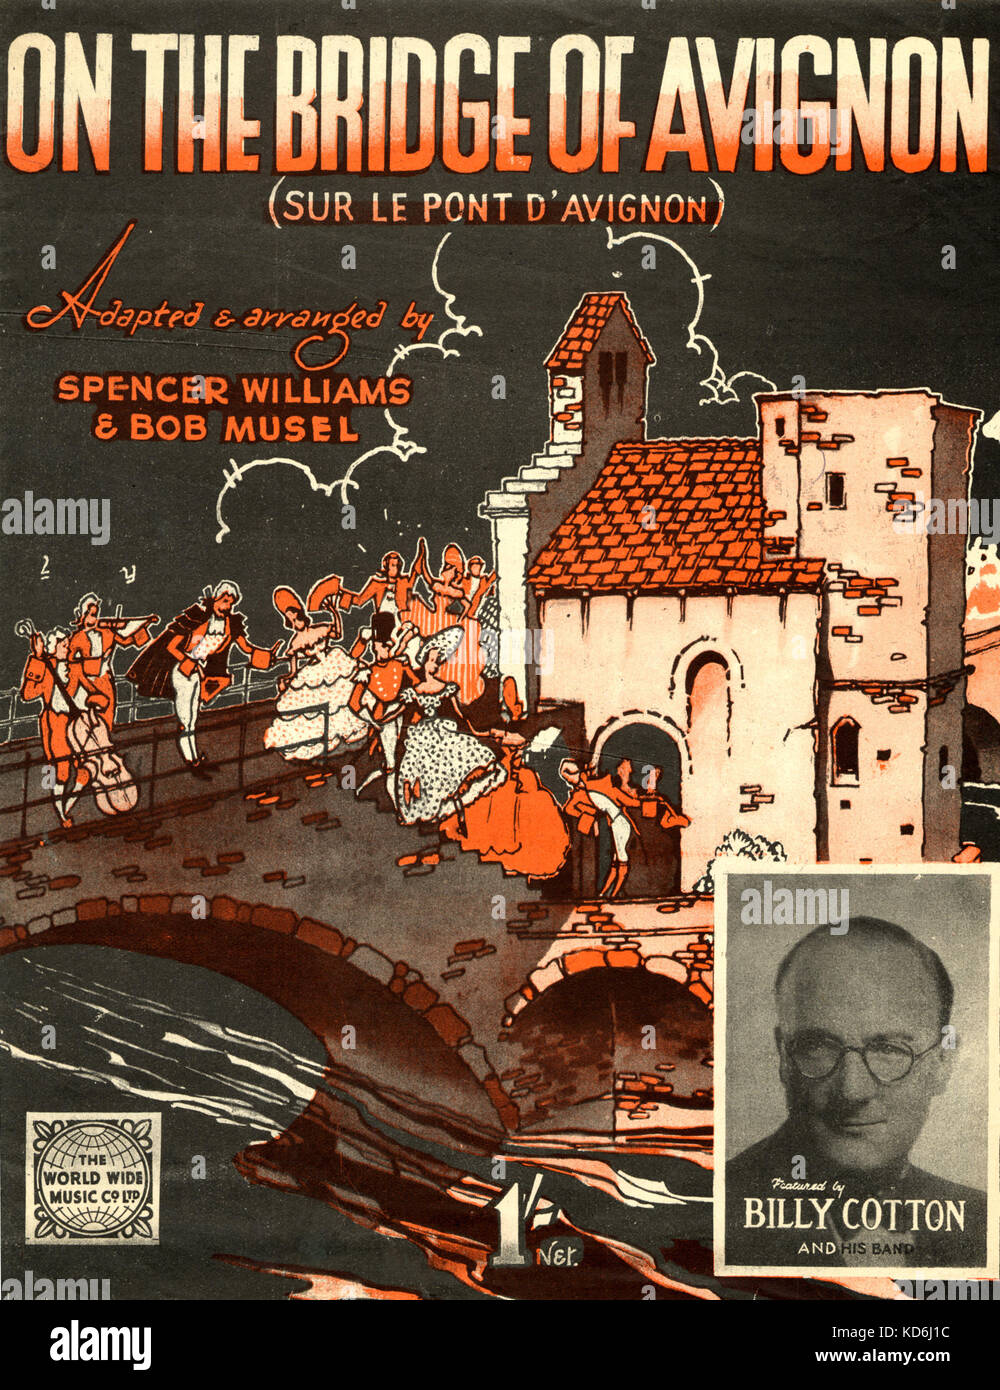 Billy Cotton & seiner Band-Score Cover" auf der Brücke von Avignon". 18. Jahrhundert Tanz und Kostüm. World Wide Music Co. Ltd, 1944 (Musik in WW2). Frankreich. Stockfoto